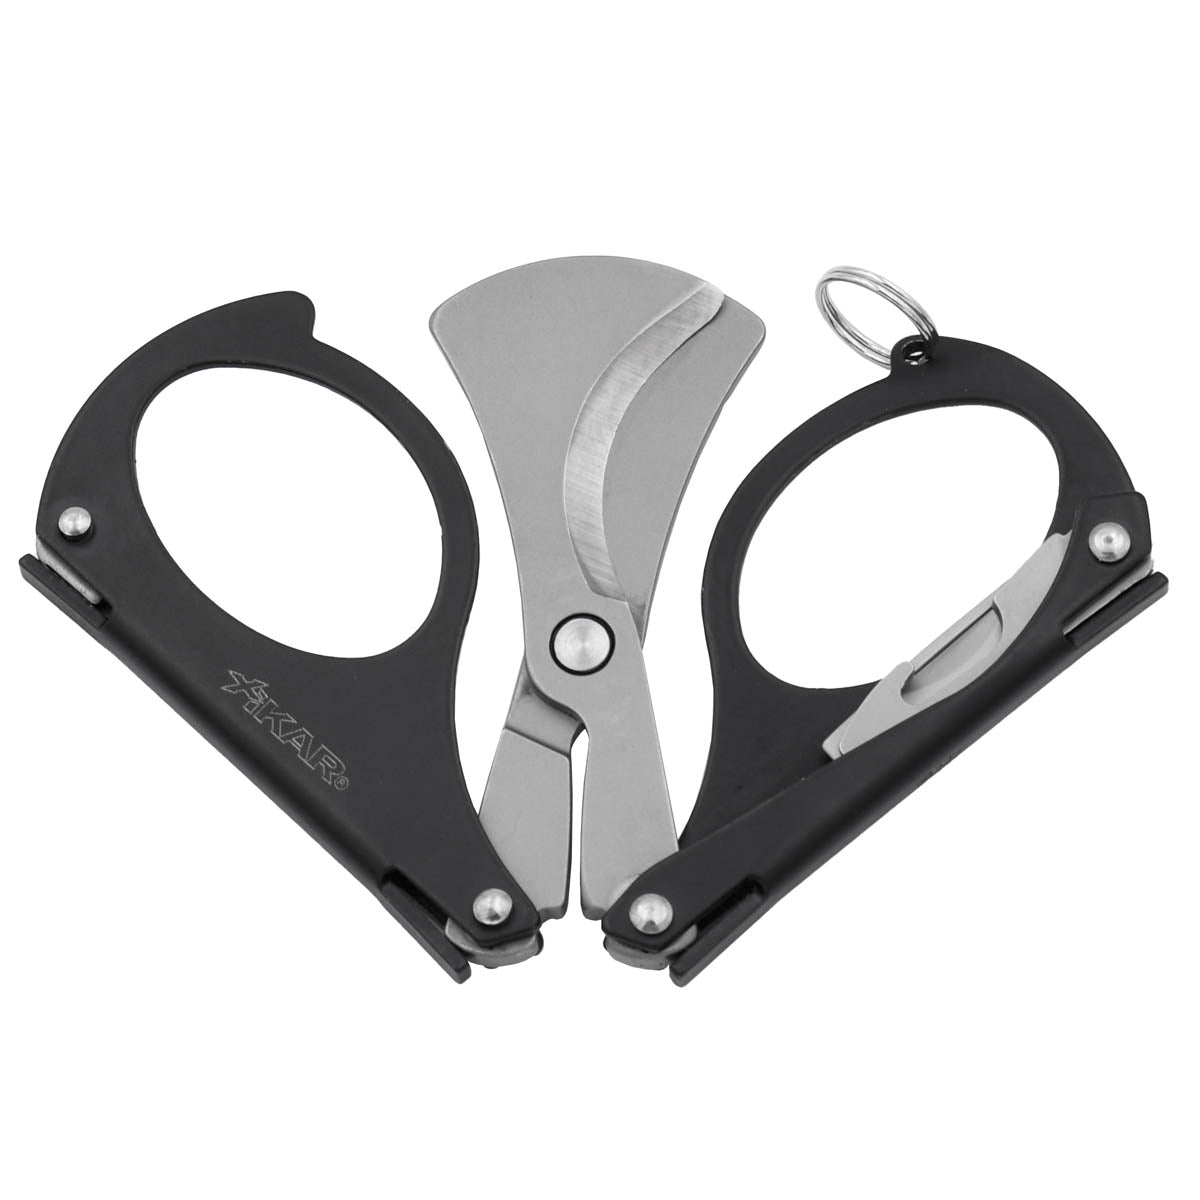 XIKAR® MTX Multi-tool Cigar Scissor Cutter